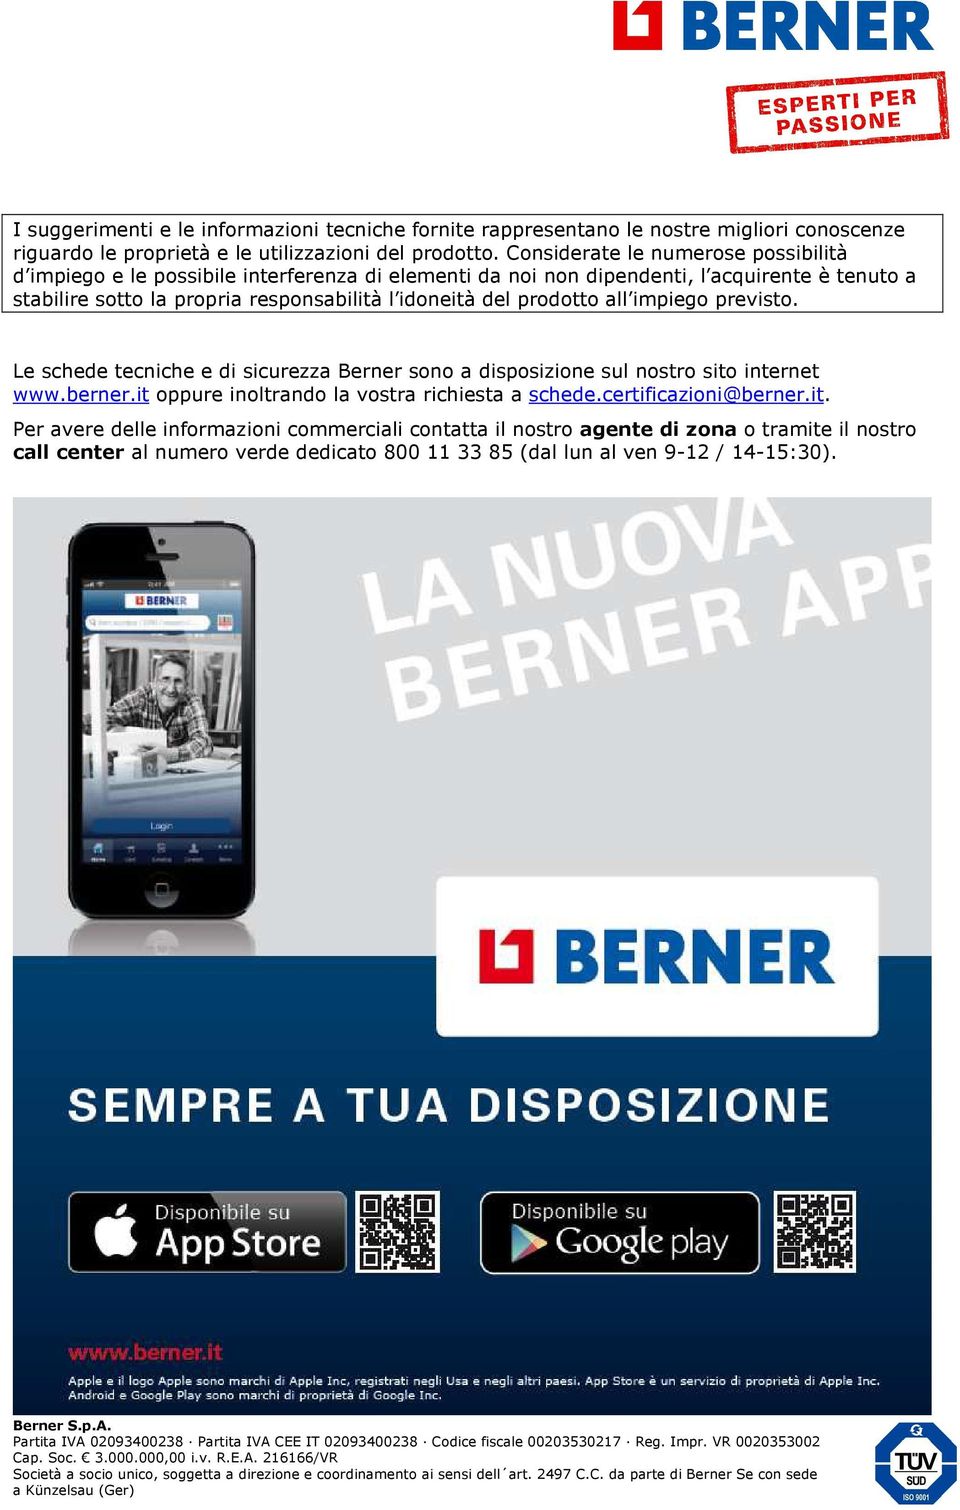 del prodotto all impiego previsto. Le schede tecniche e di sicurezza Berner sono a disposizione sul nostro sito internet www.berner.it oppure inoltrando la vostra richiesta a schede.